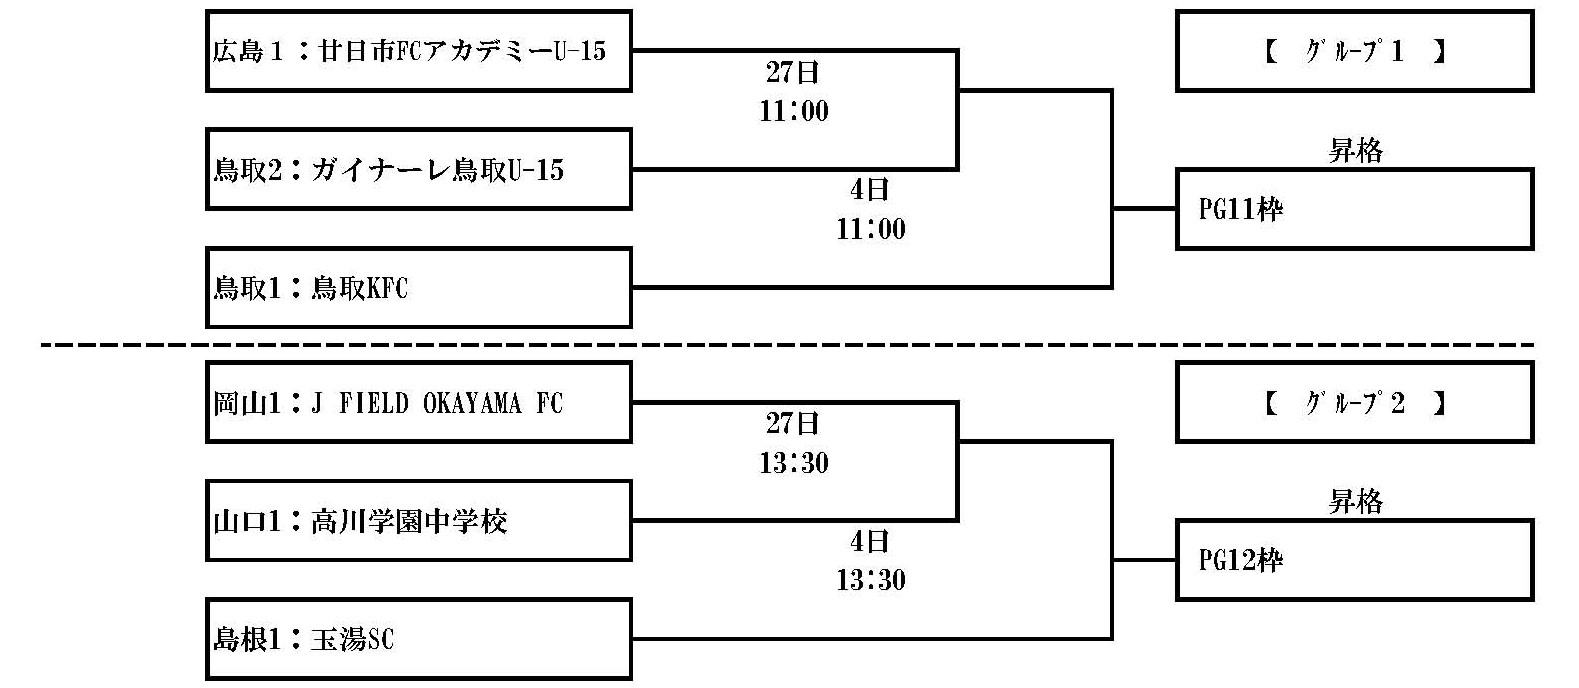 高円宮杯 Jfa U 15サッカーリーグ21鳥取県 一般財団法人 鳥取県サッカー協会